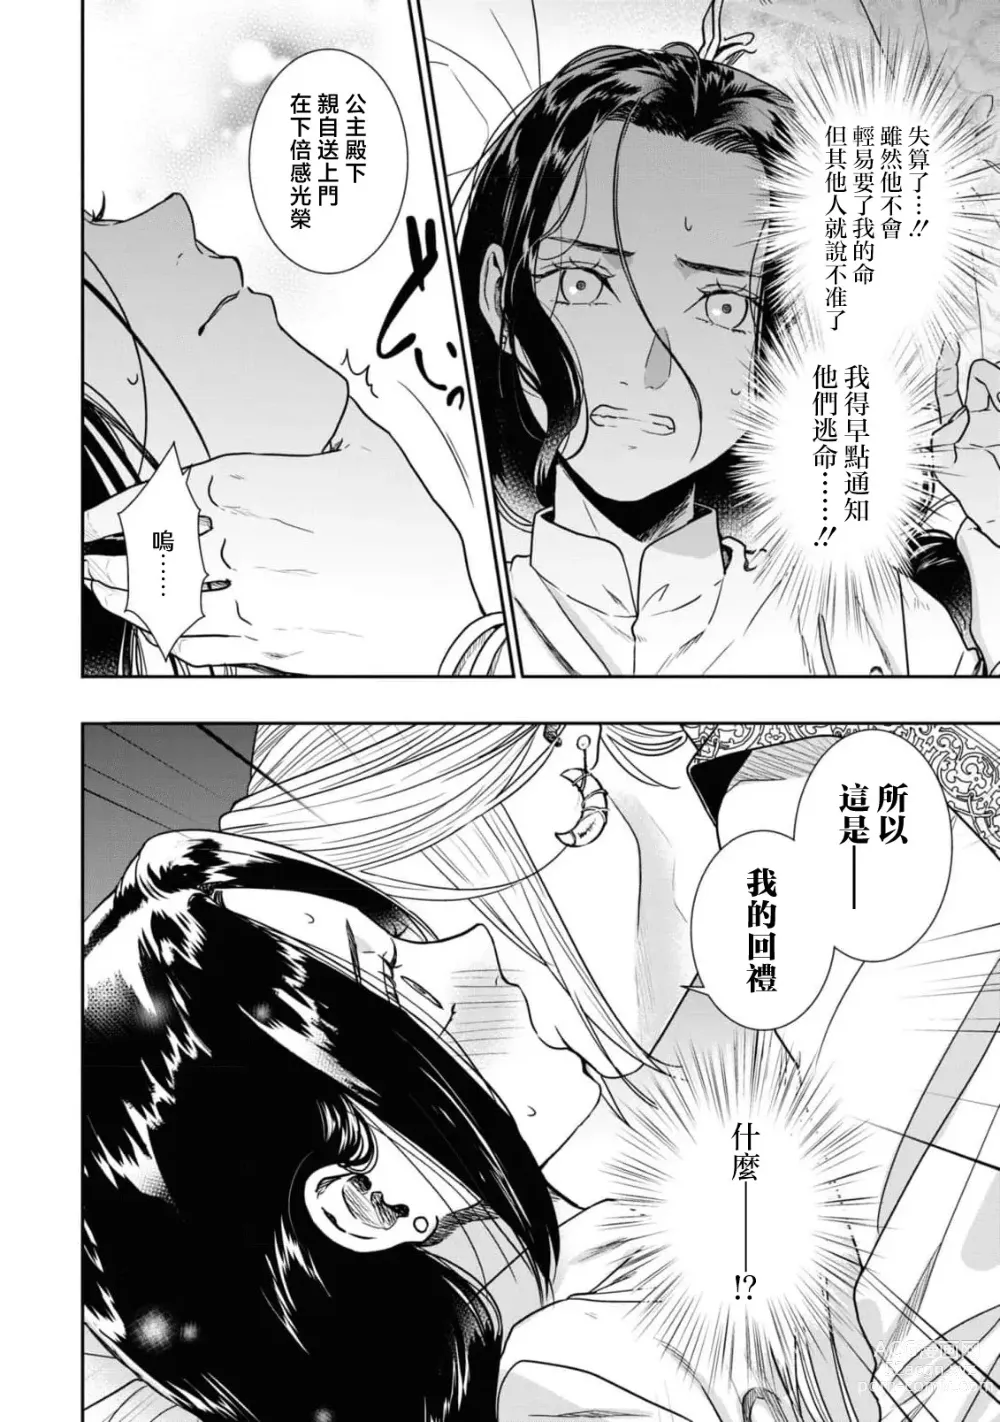 Page 13 of manga 做还是被做、又或是娇喘到天明